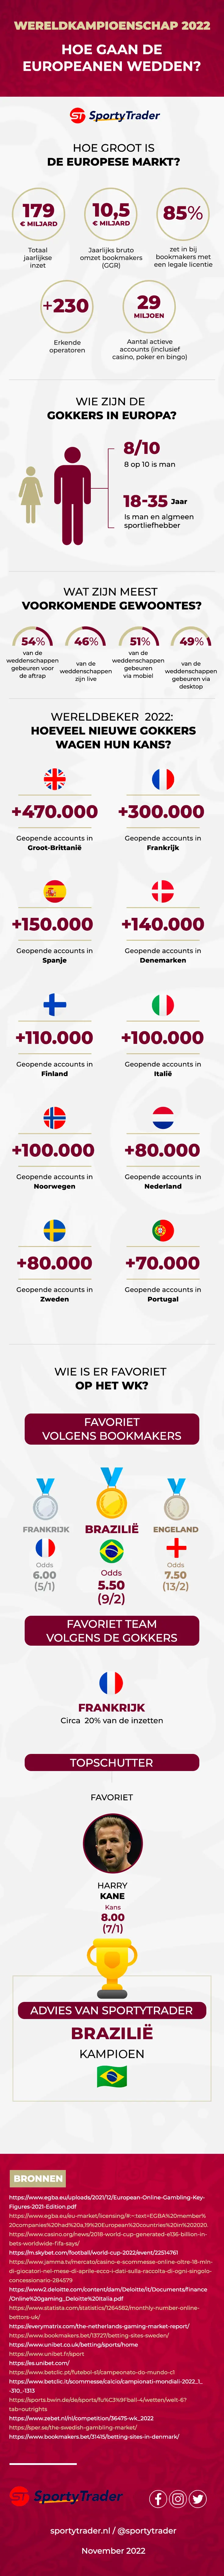 Sportweddenschappen in Nederland: de cijfers die de sector verwacht tijdens het WK in Qatar